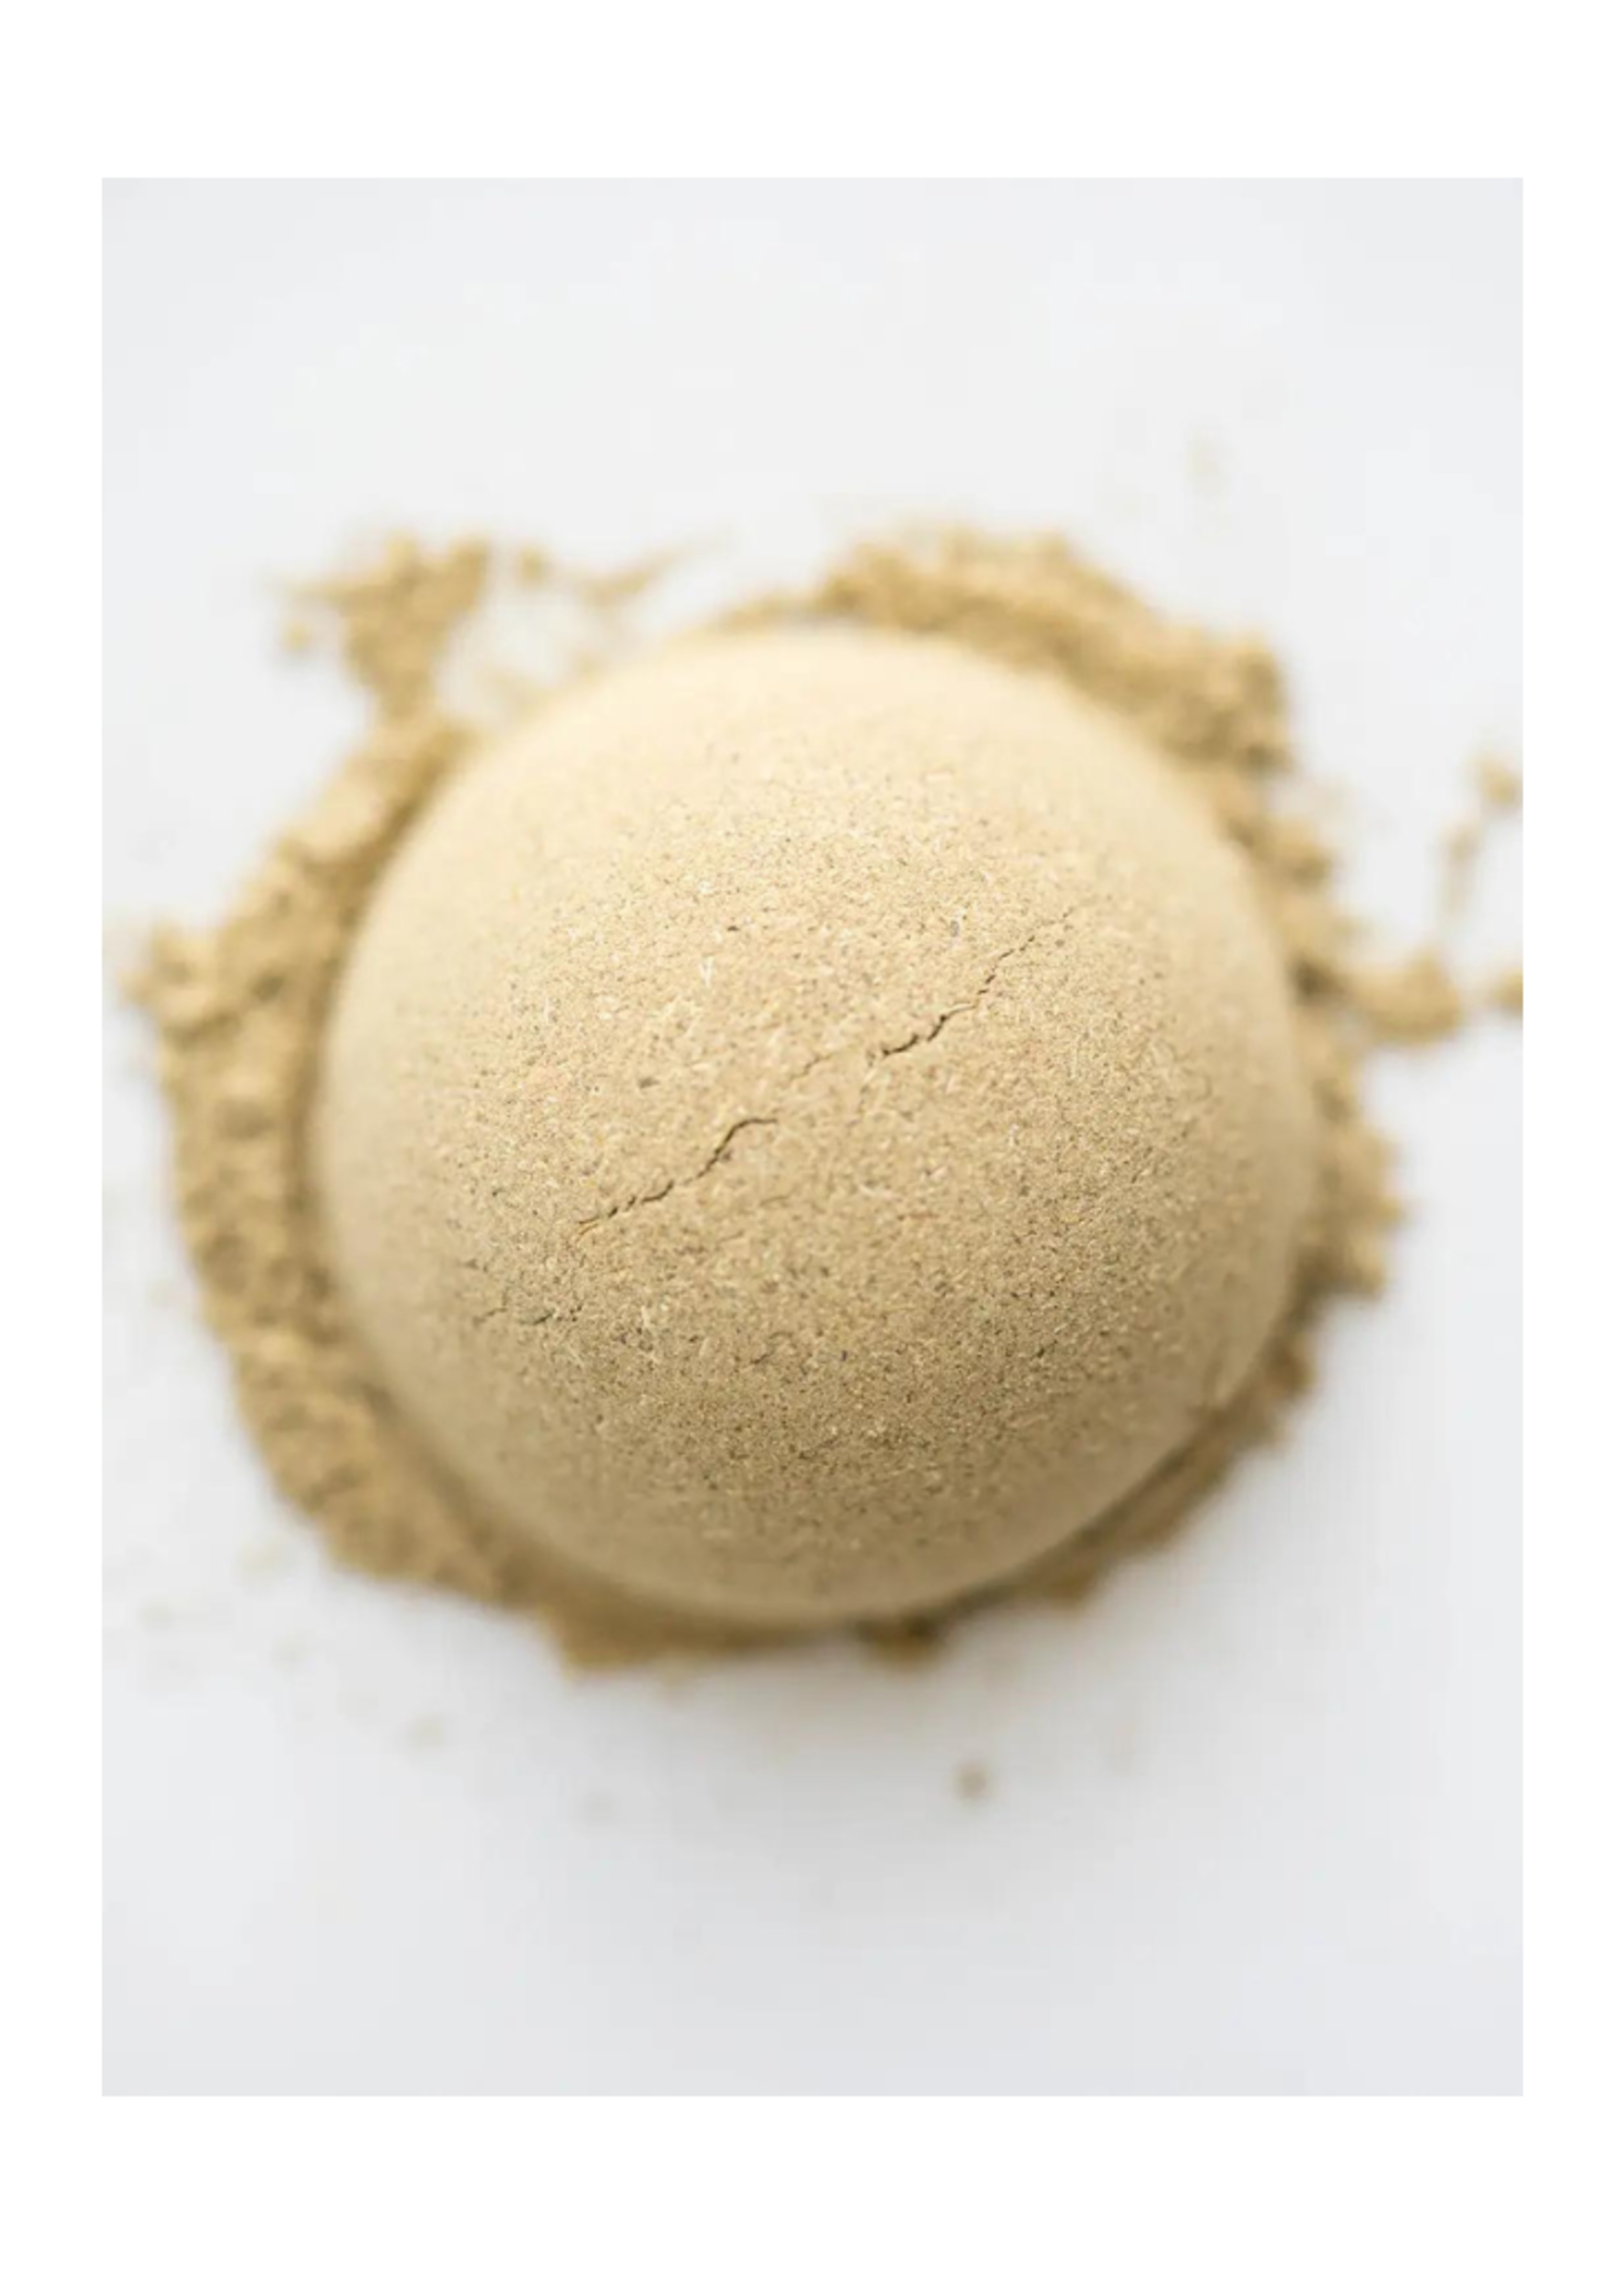 Vana Tisanes Vana Tisanes - Energy | Fine Plant & Mushroom Powder